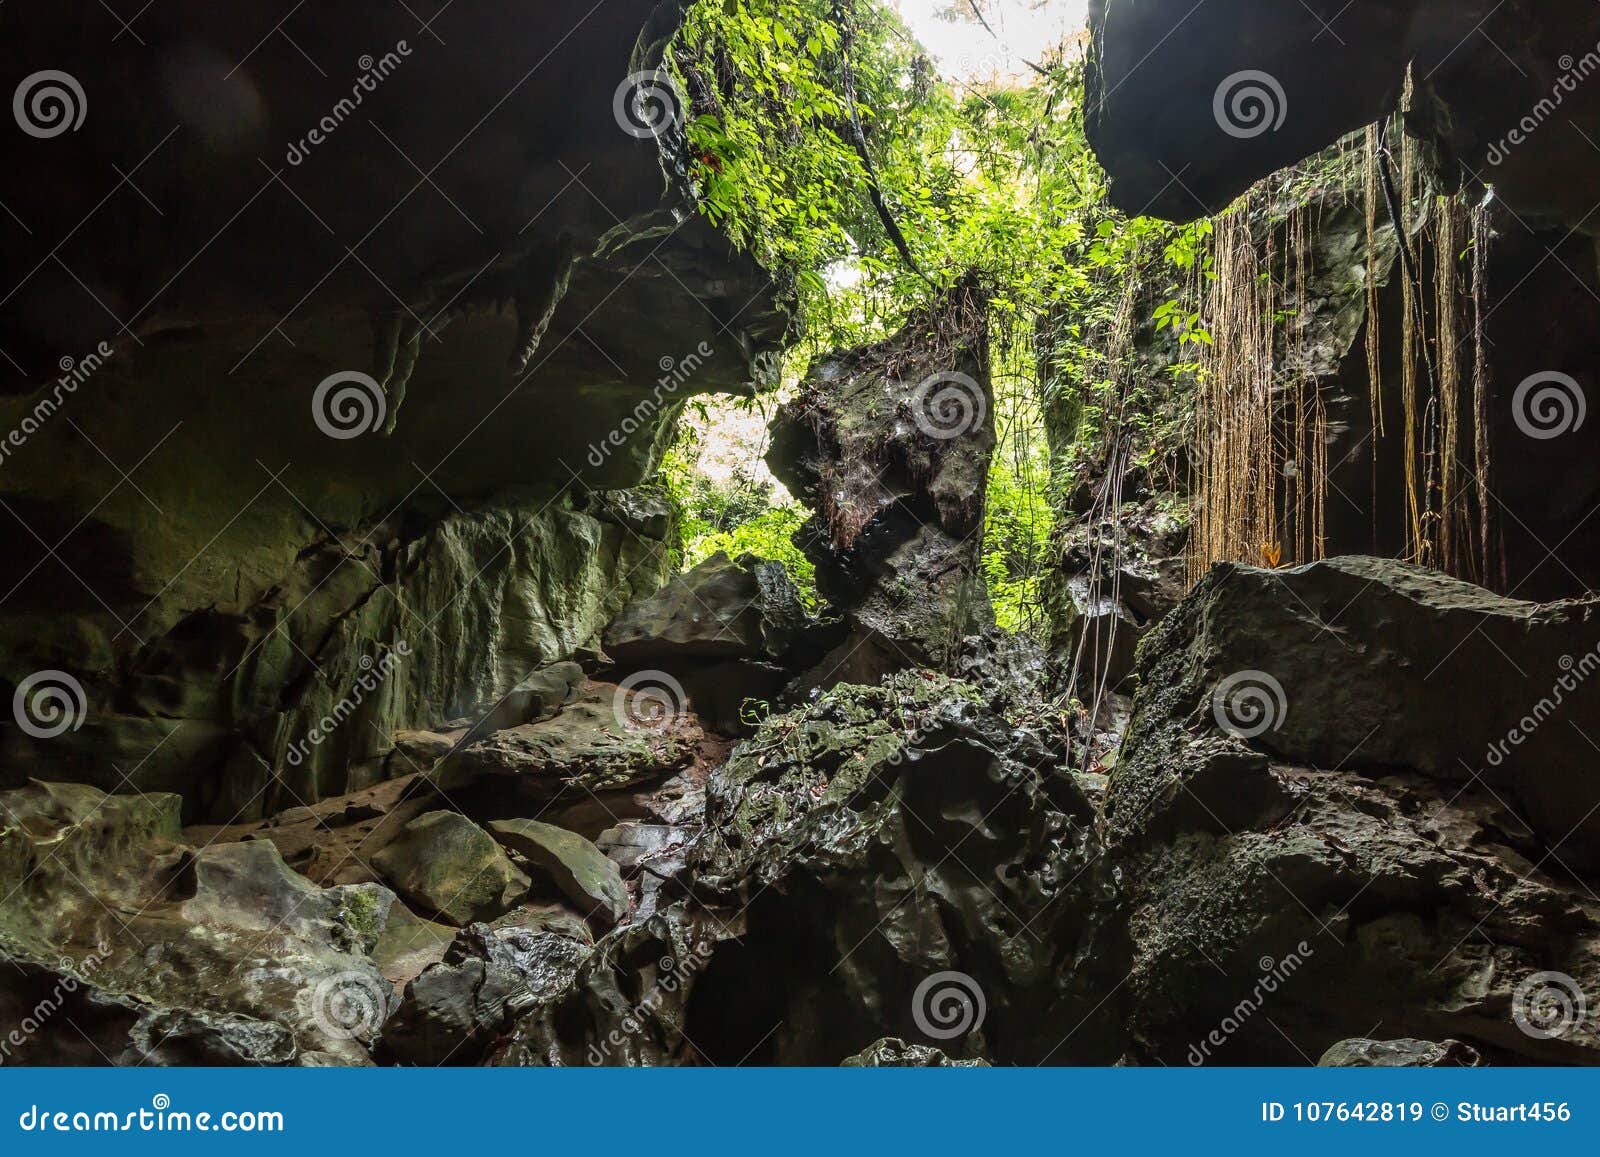 bat cave, a limestone cave near bukit lawang in gunung leuser national park, sumatra, indonesia.